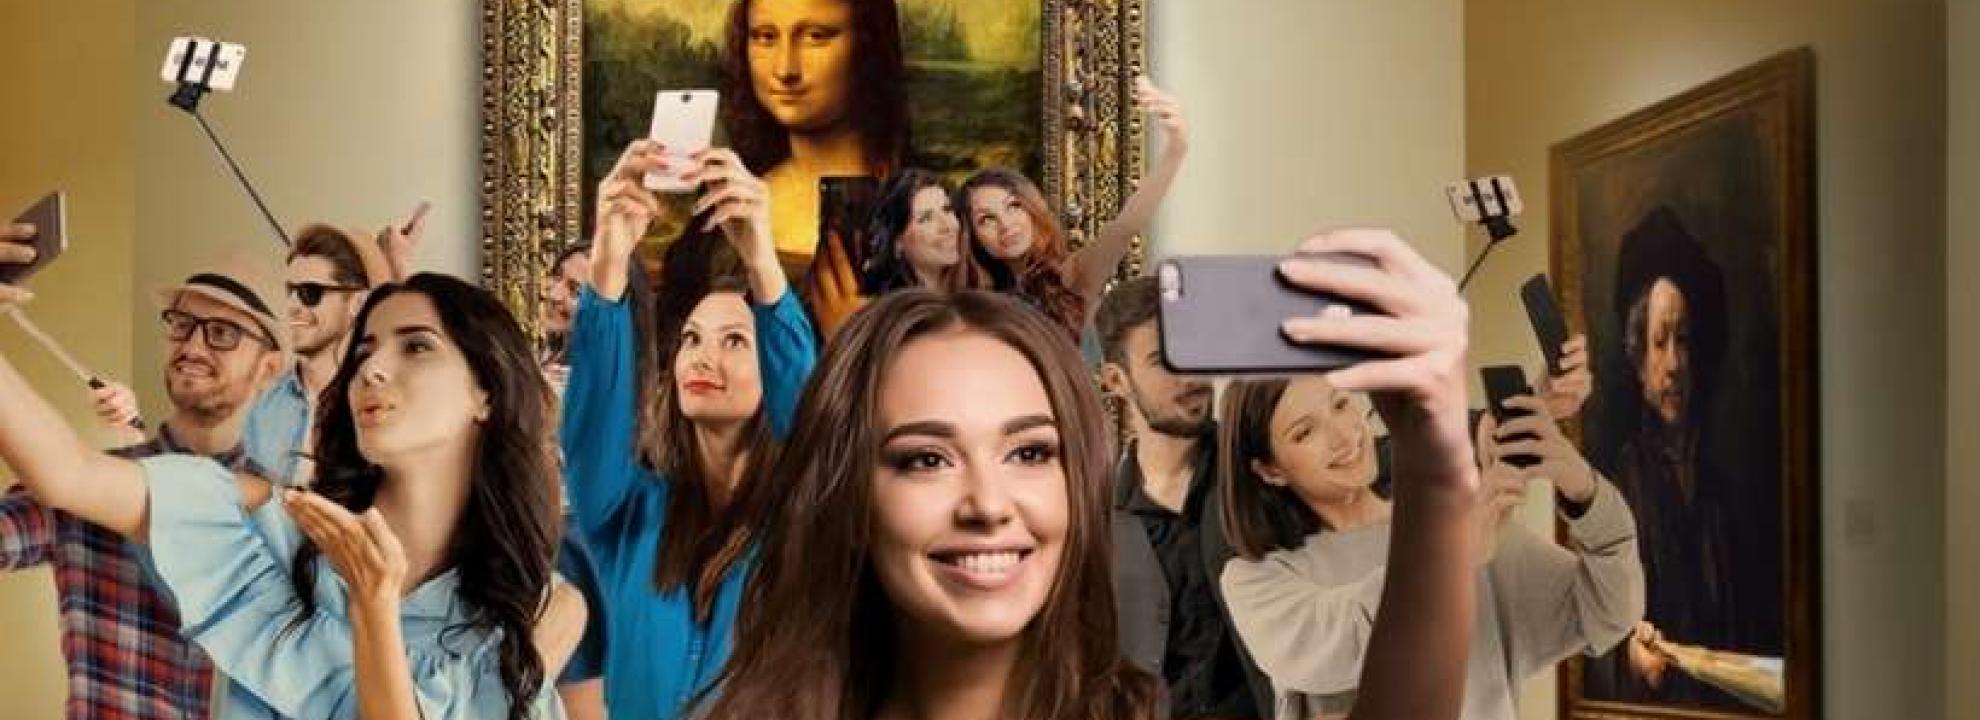 Museum of selfies